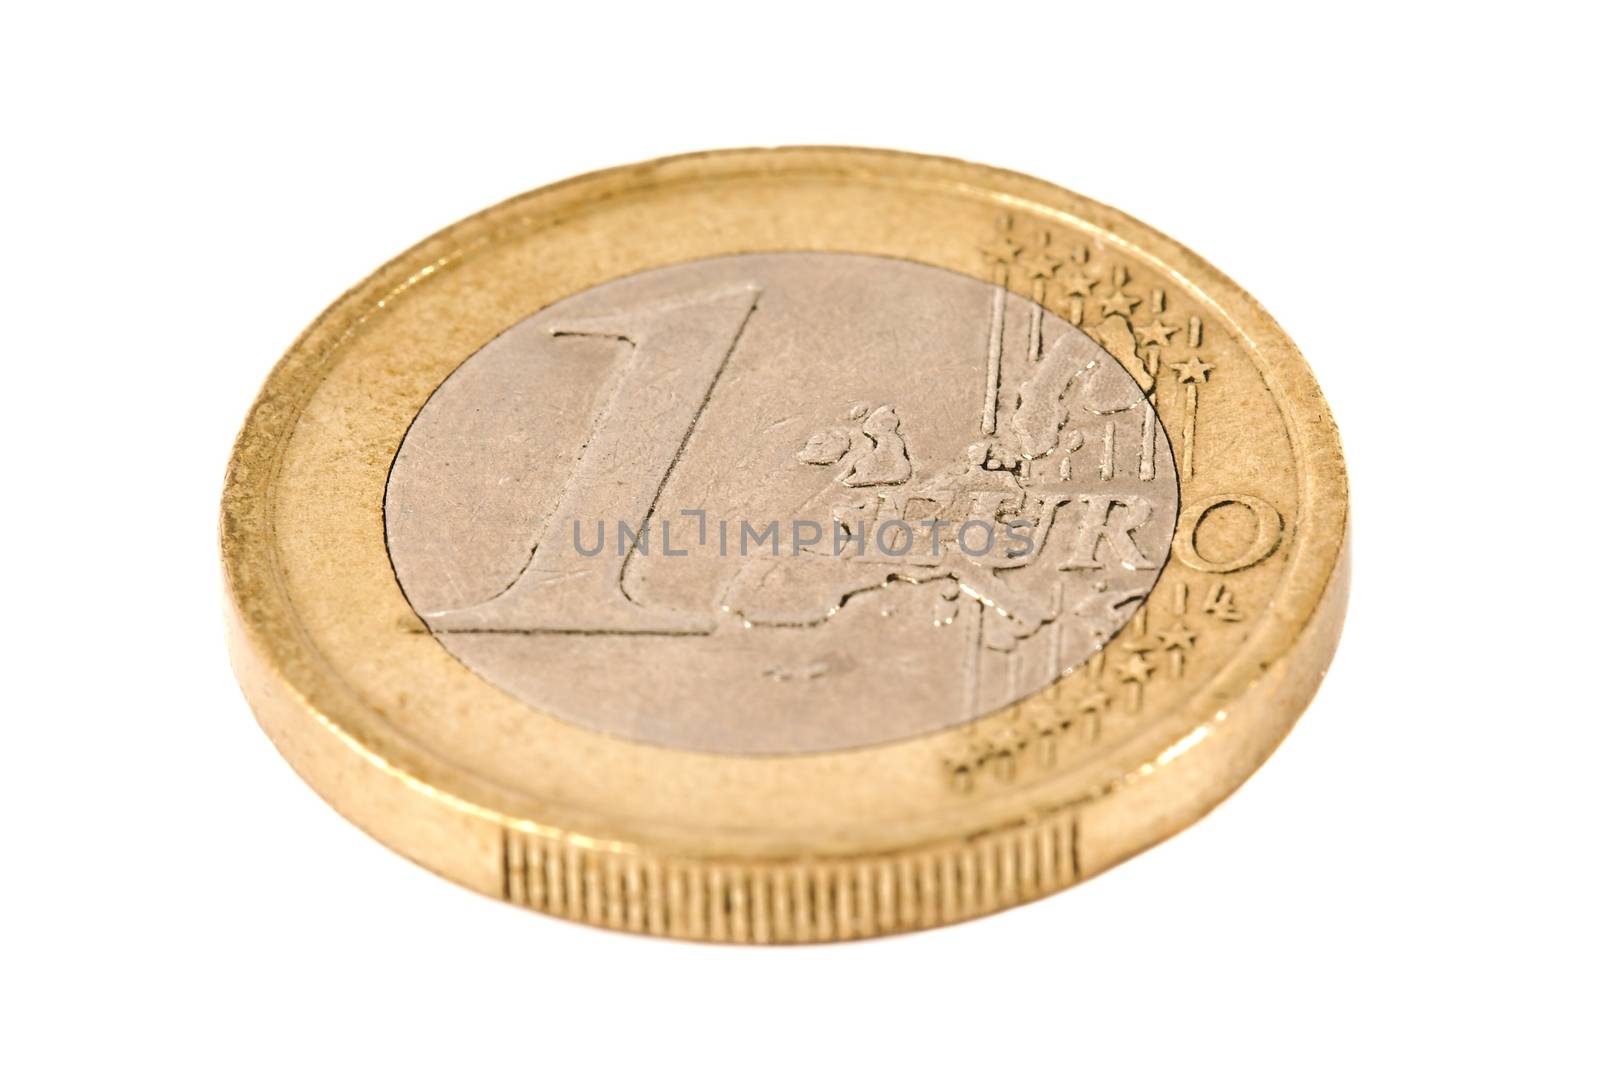 Euro Coin by Gudella